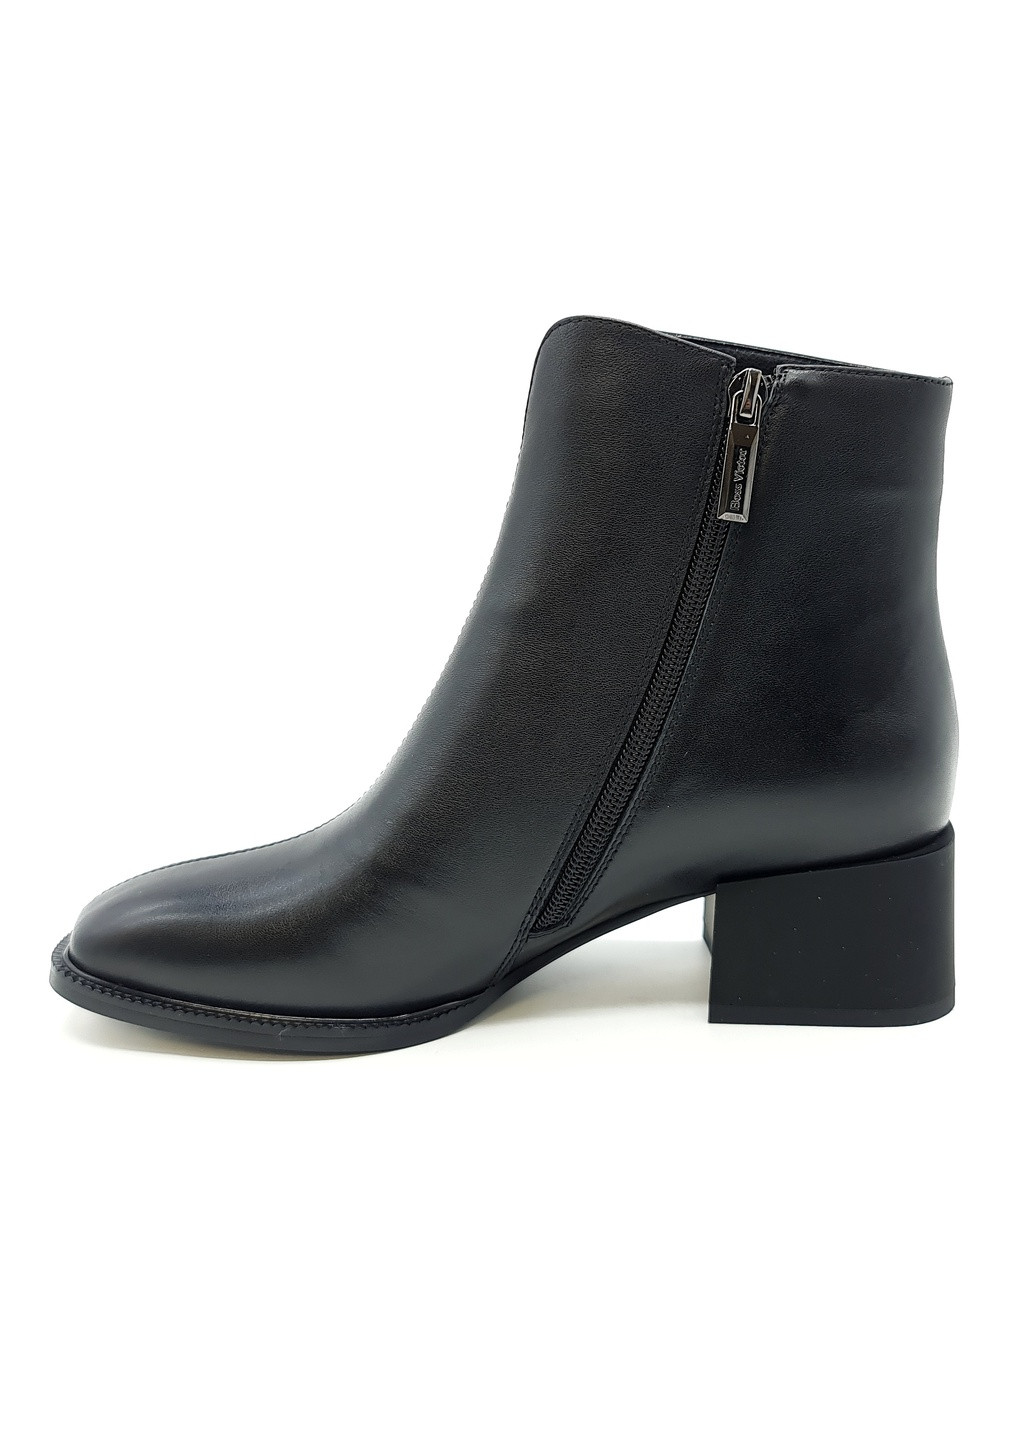 Осенние женские ботинки черные кожаные bv-18-18 23 см (р) Boss Victori